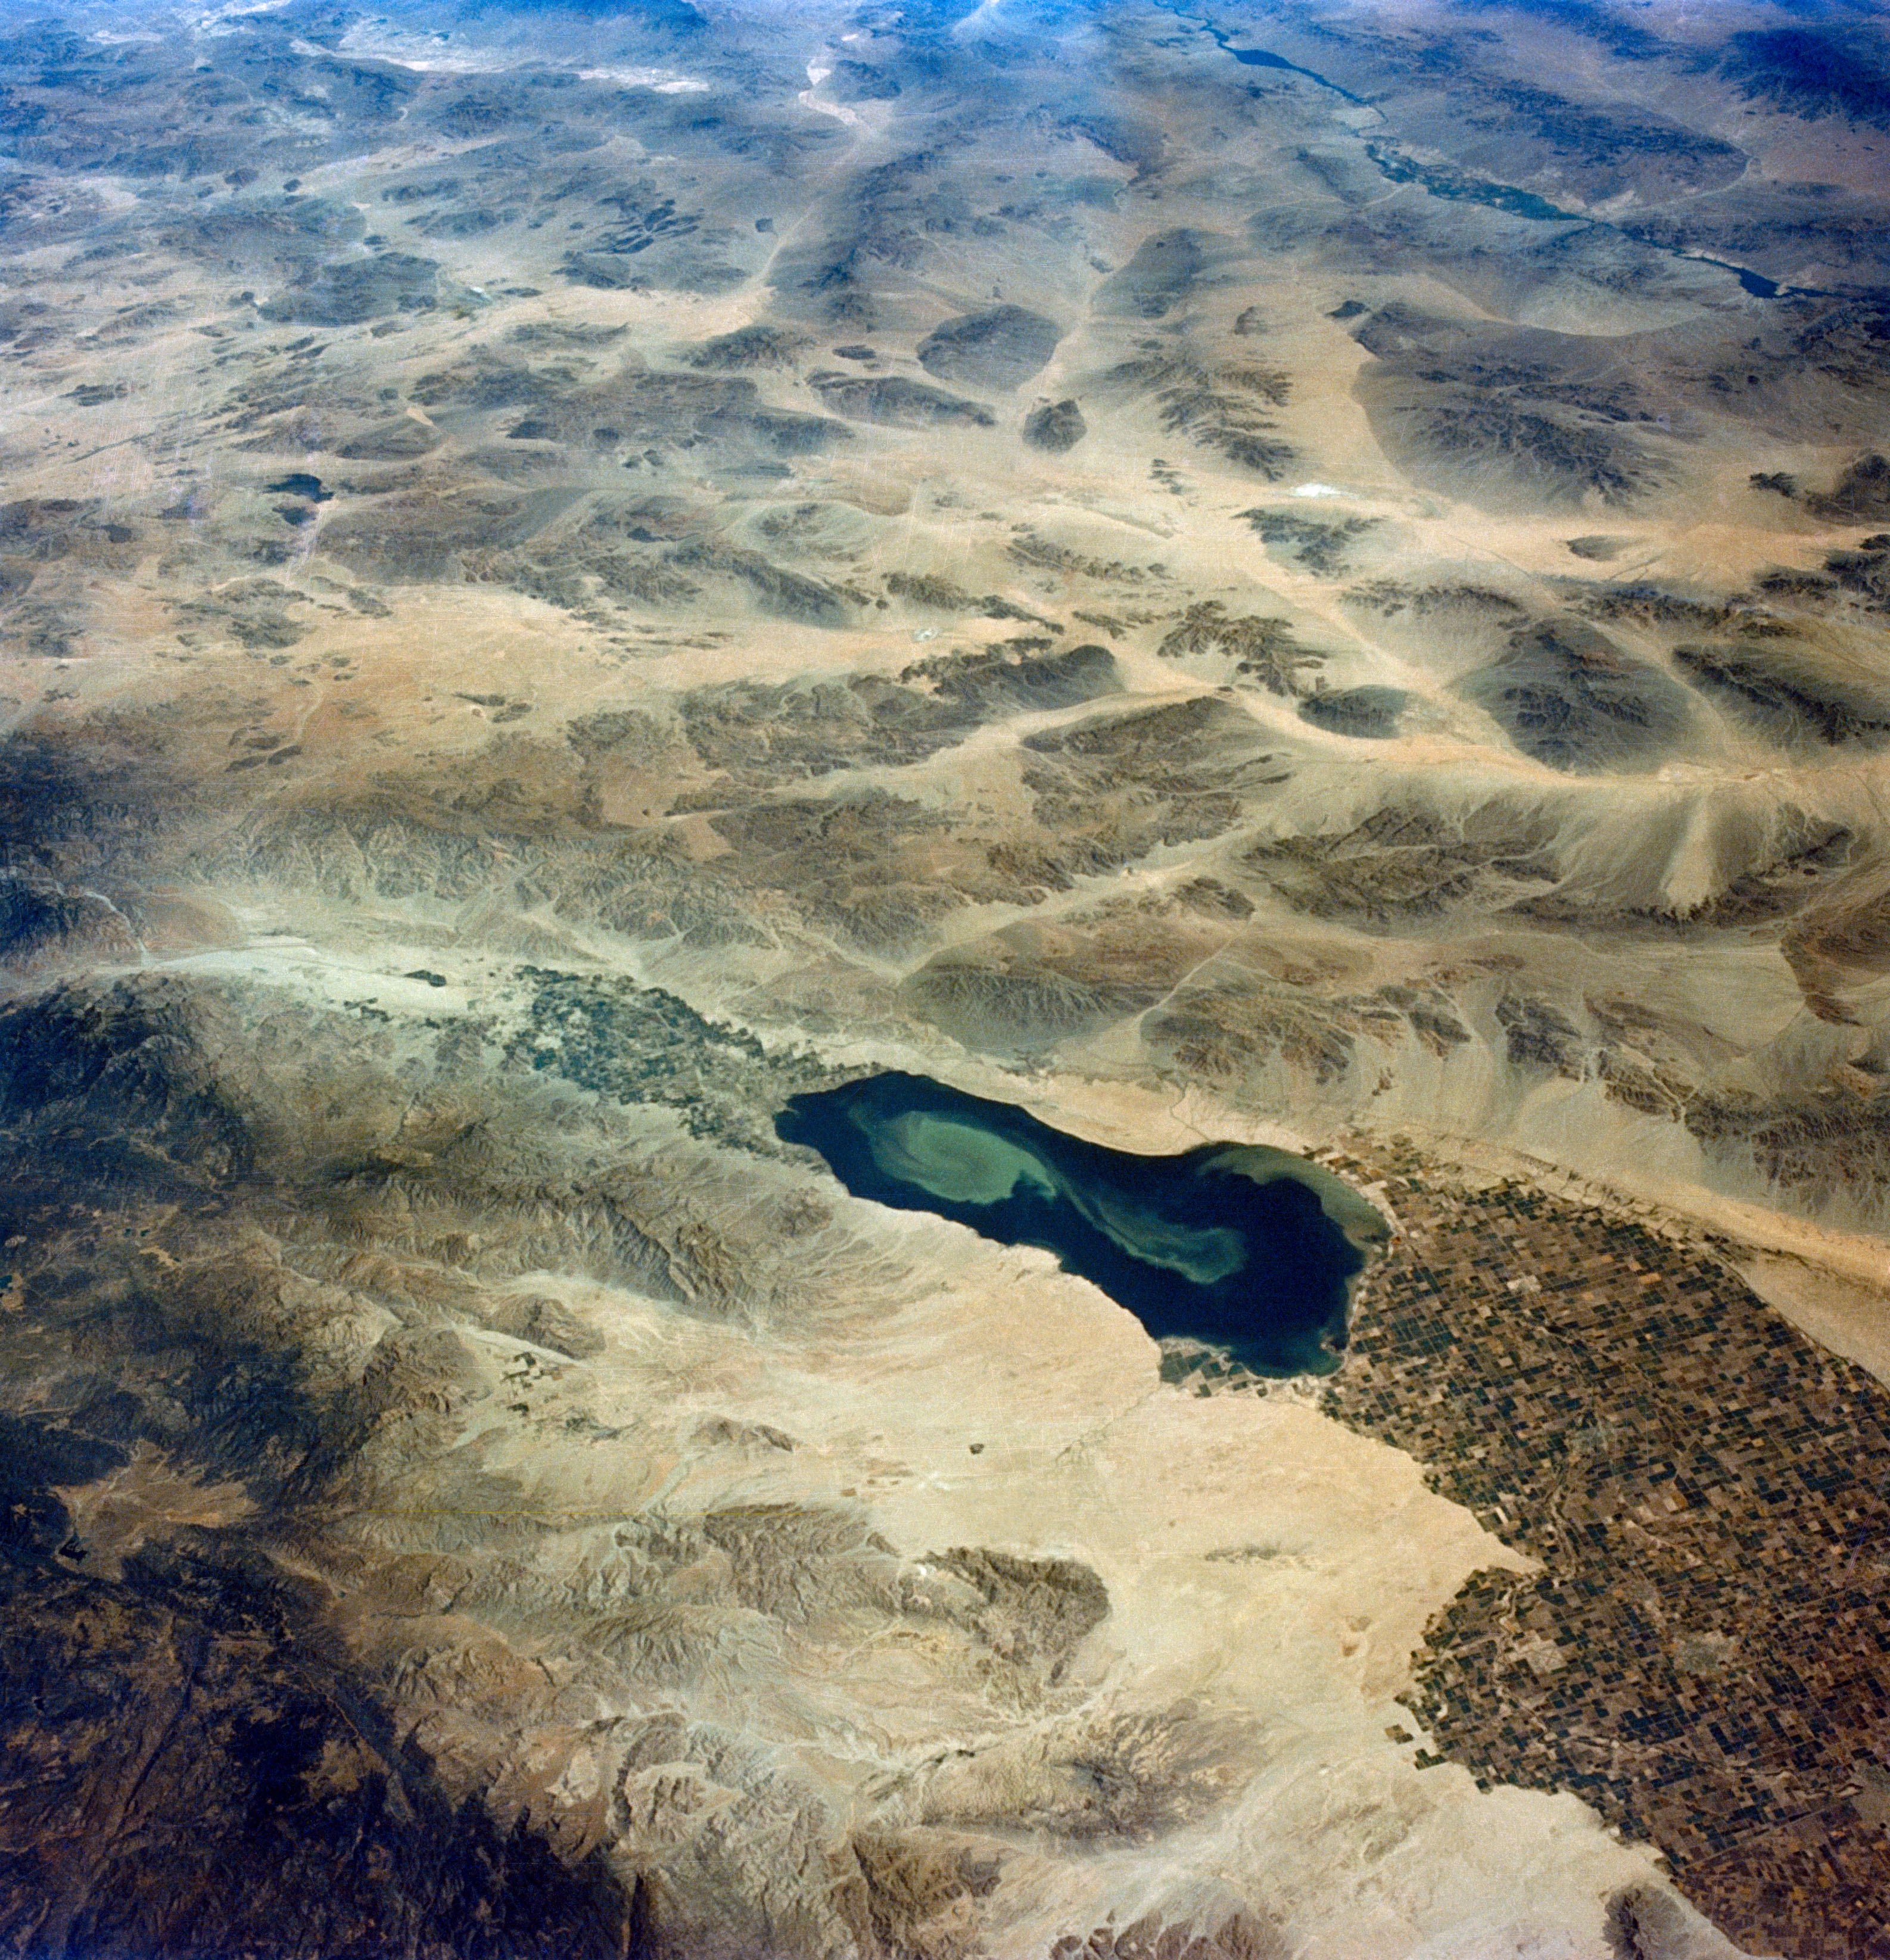 El  Mar de Salton es un lago salado y endorreico ubicado en el sur de California, Estados Unidos. Depende de la escorrentía de las tierras de cultivo para no desaparecer. Pero como los agricultores se enfrentan a menos agua debido a la sequía y a un río Colorado cada vez más seco, el Salton corre el riesgo de volver a perder agua (NASA)